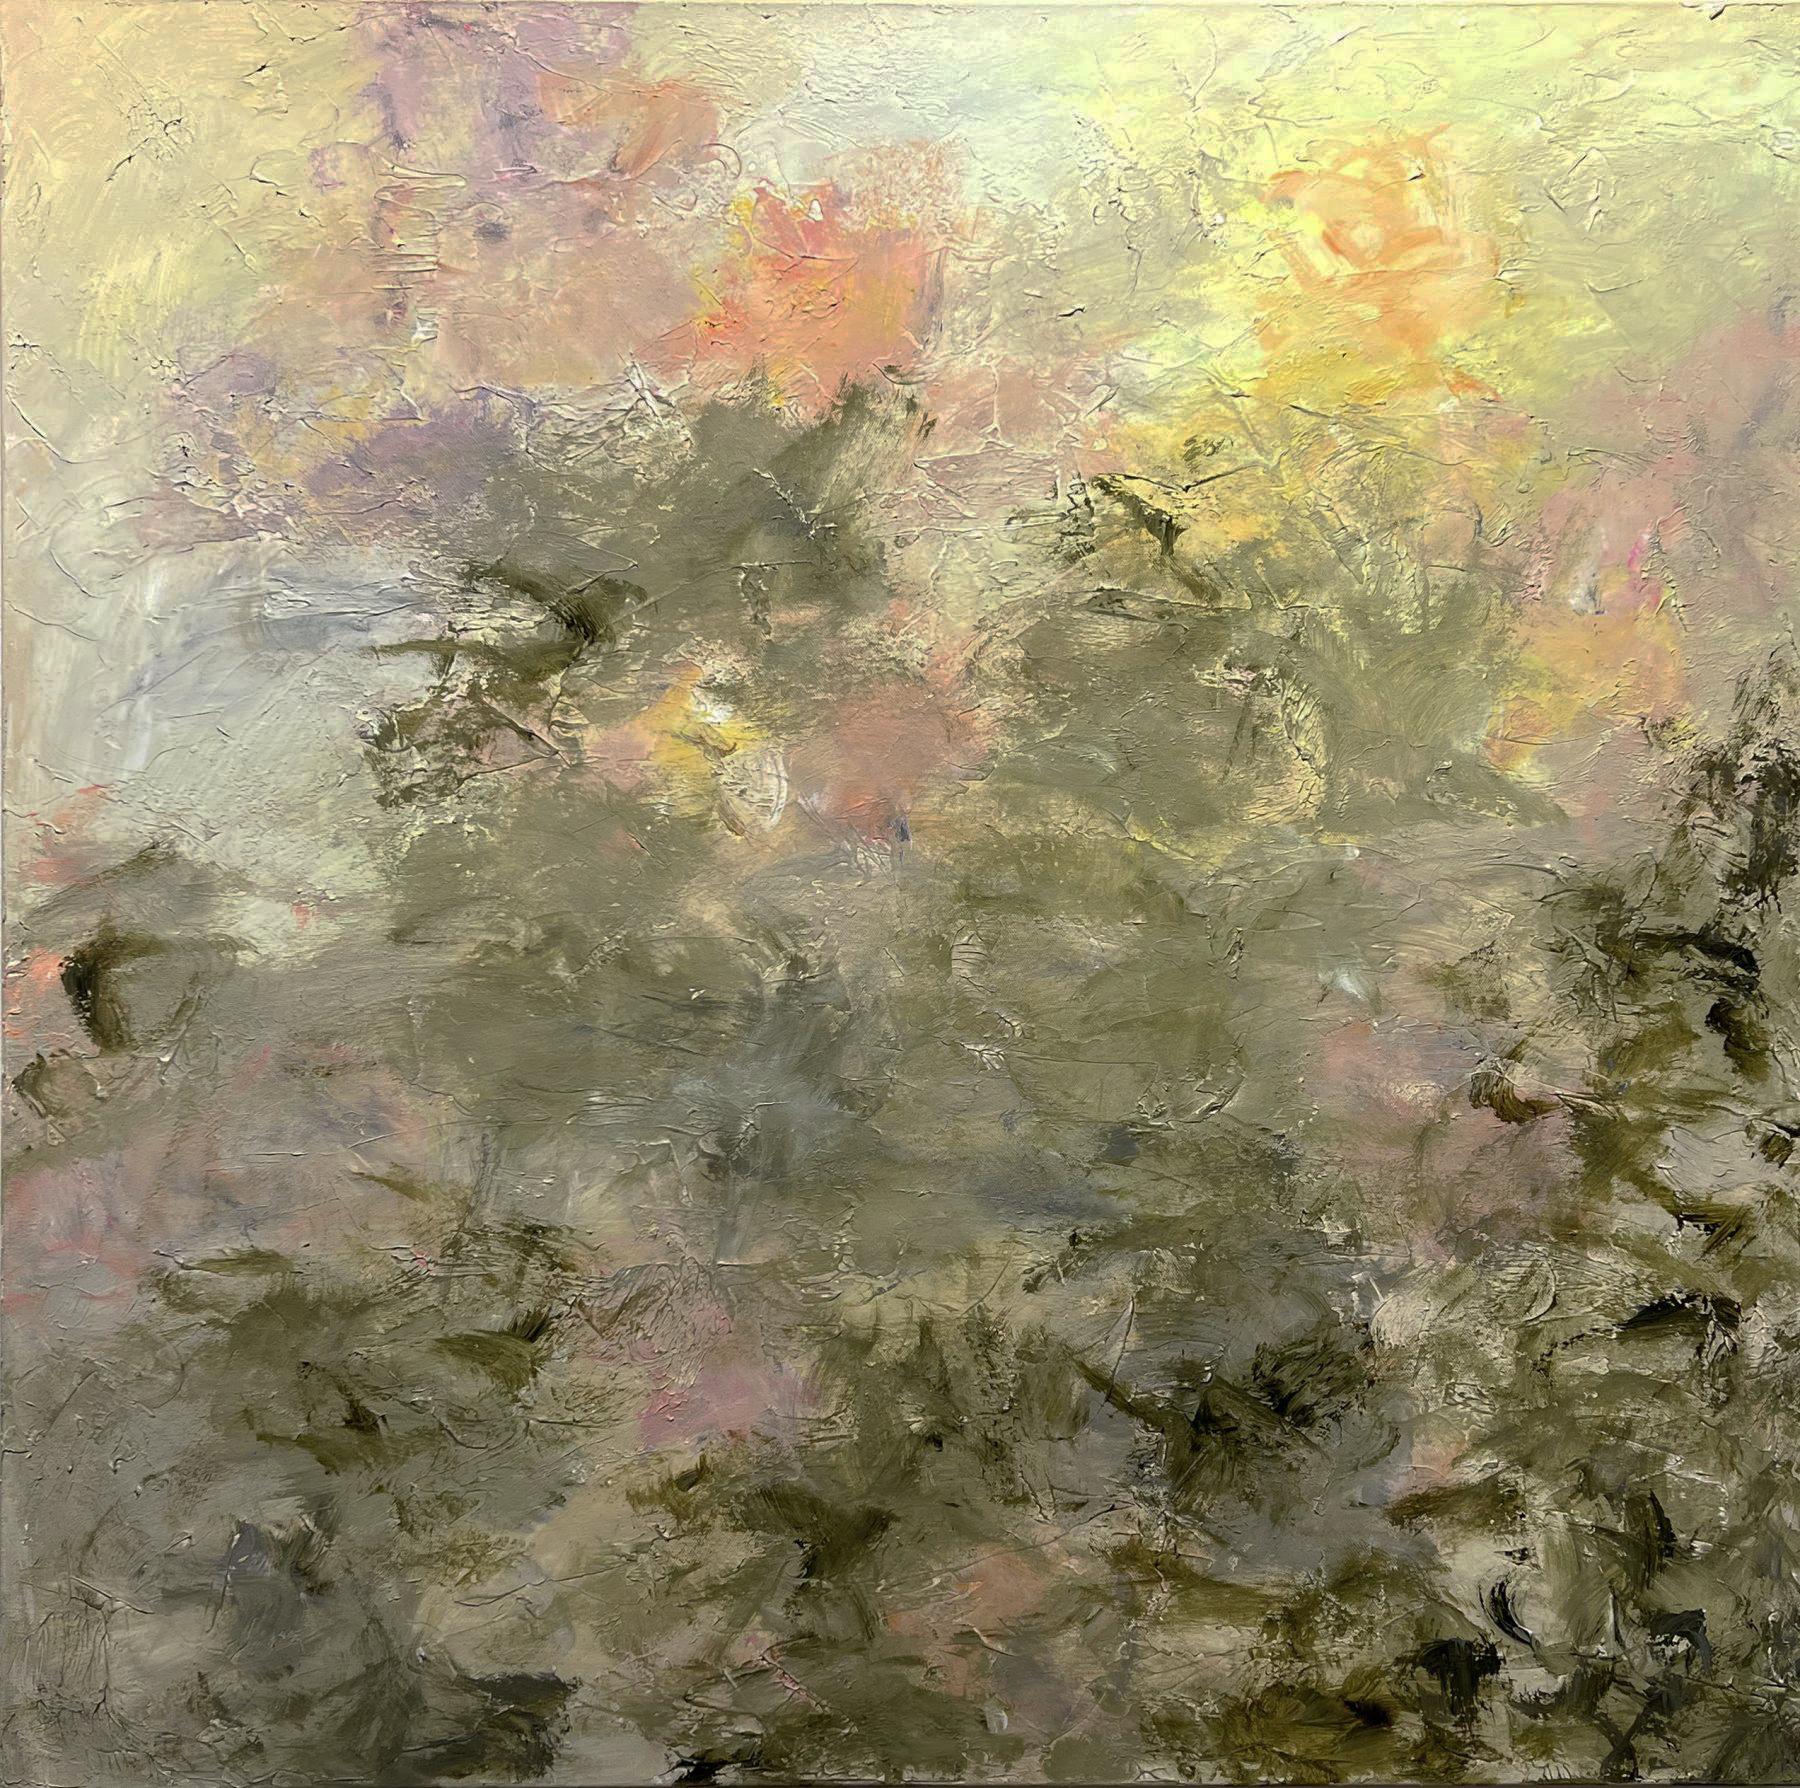 Landscape Painting Gary Zack  - Gary Zack, "Golden Blush", 36x36 Peinture à l'huile sur toile, floral rose atmosphérique